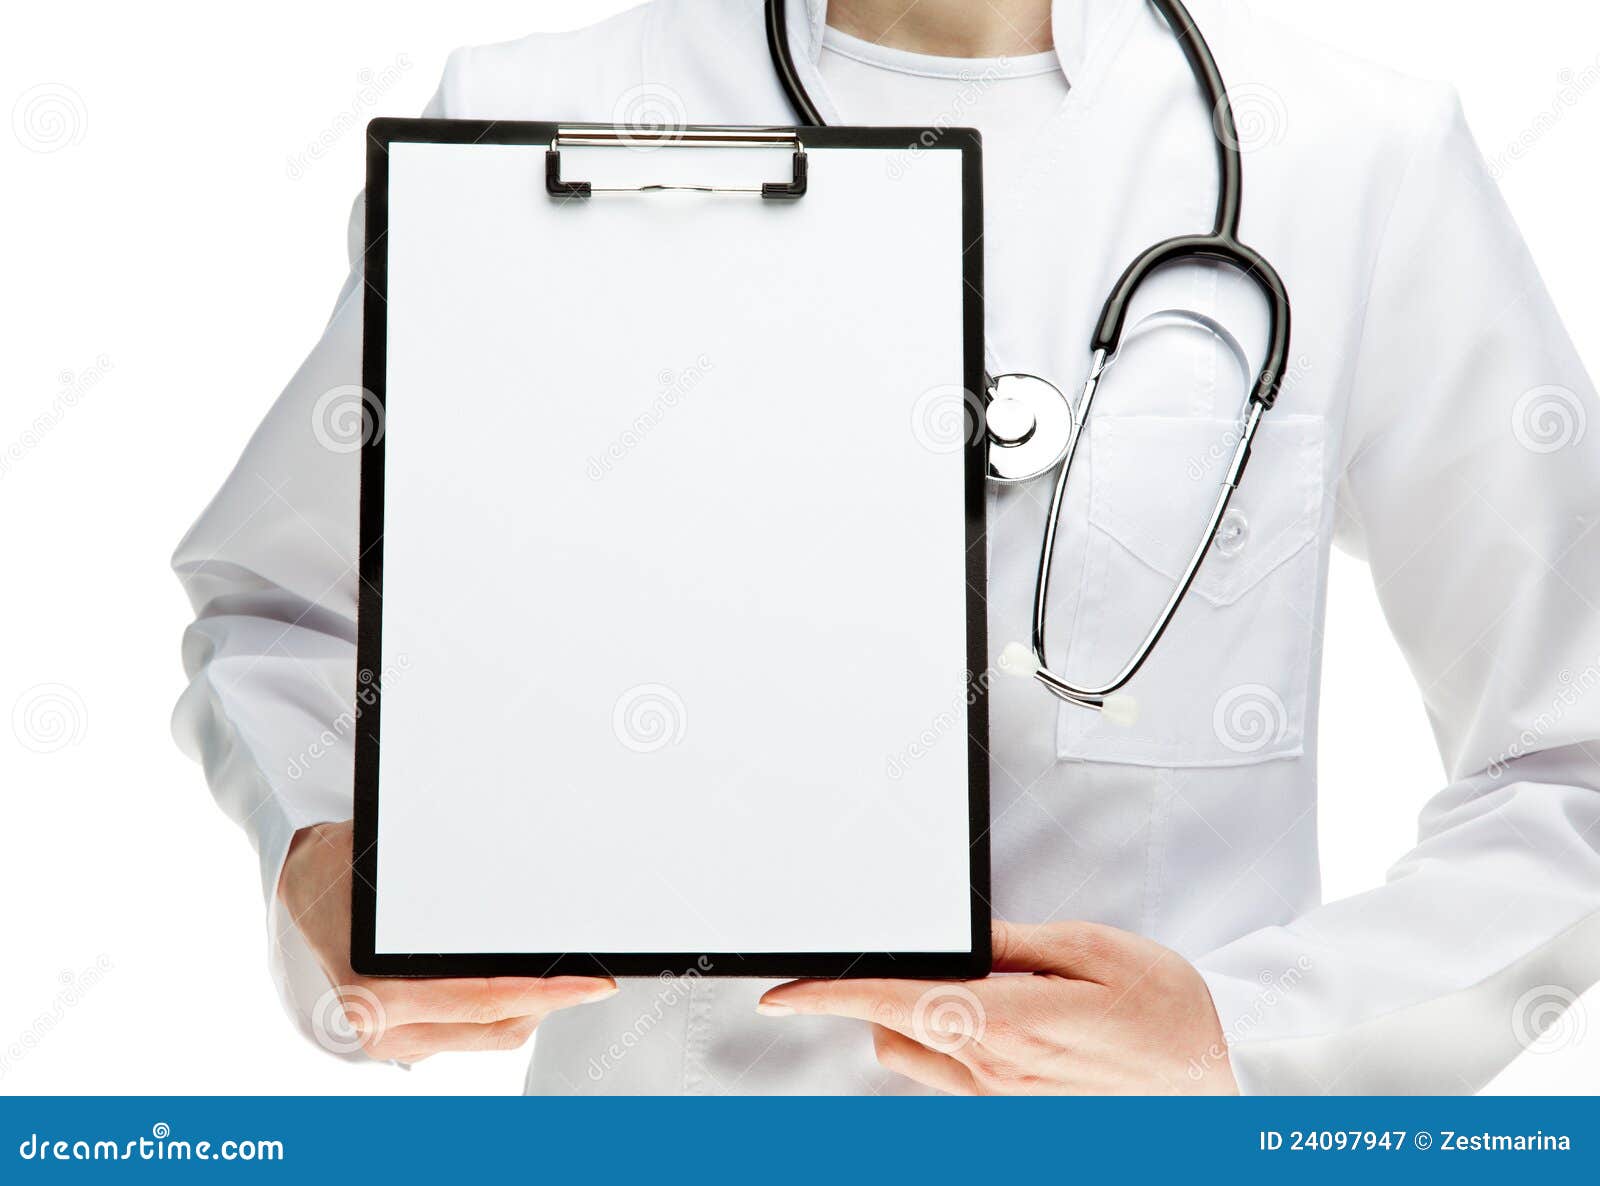 Sluiting rekenkundig Statistisch Doctor S Hands Holding Clipboard with Paper Stock Image - Image of closeup,  doctor: 24097947